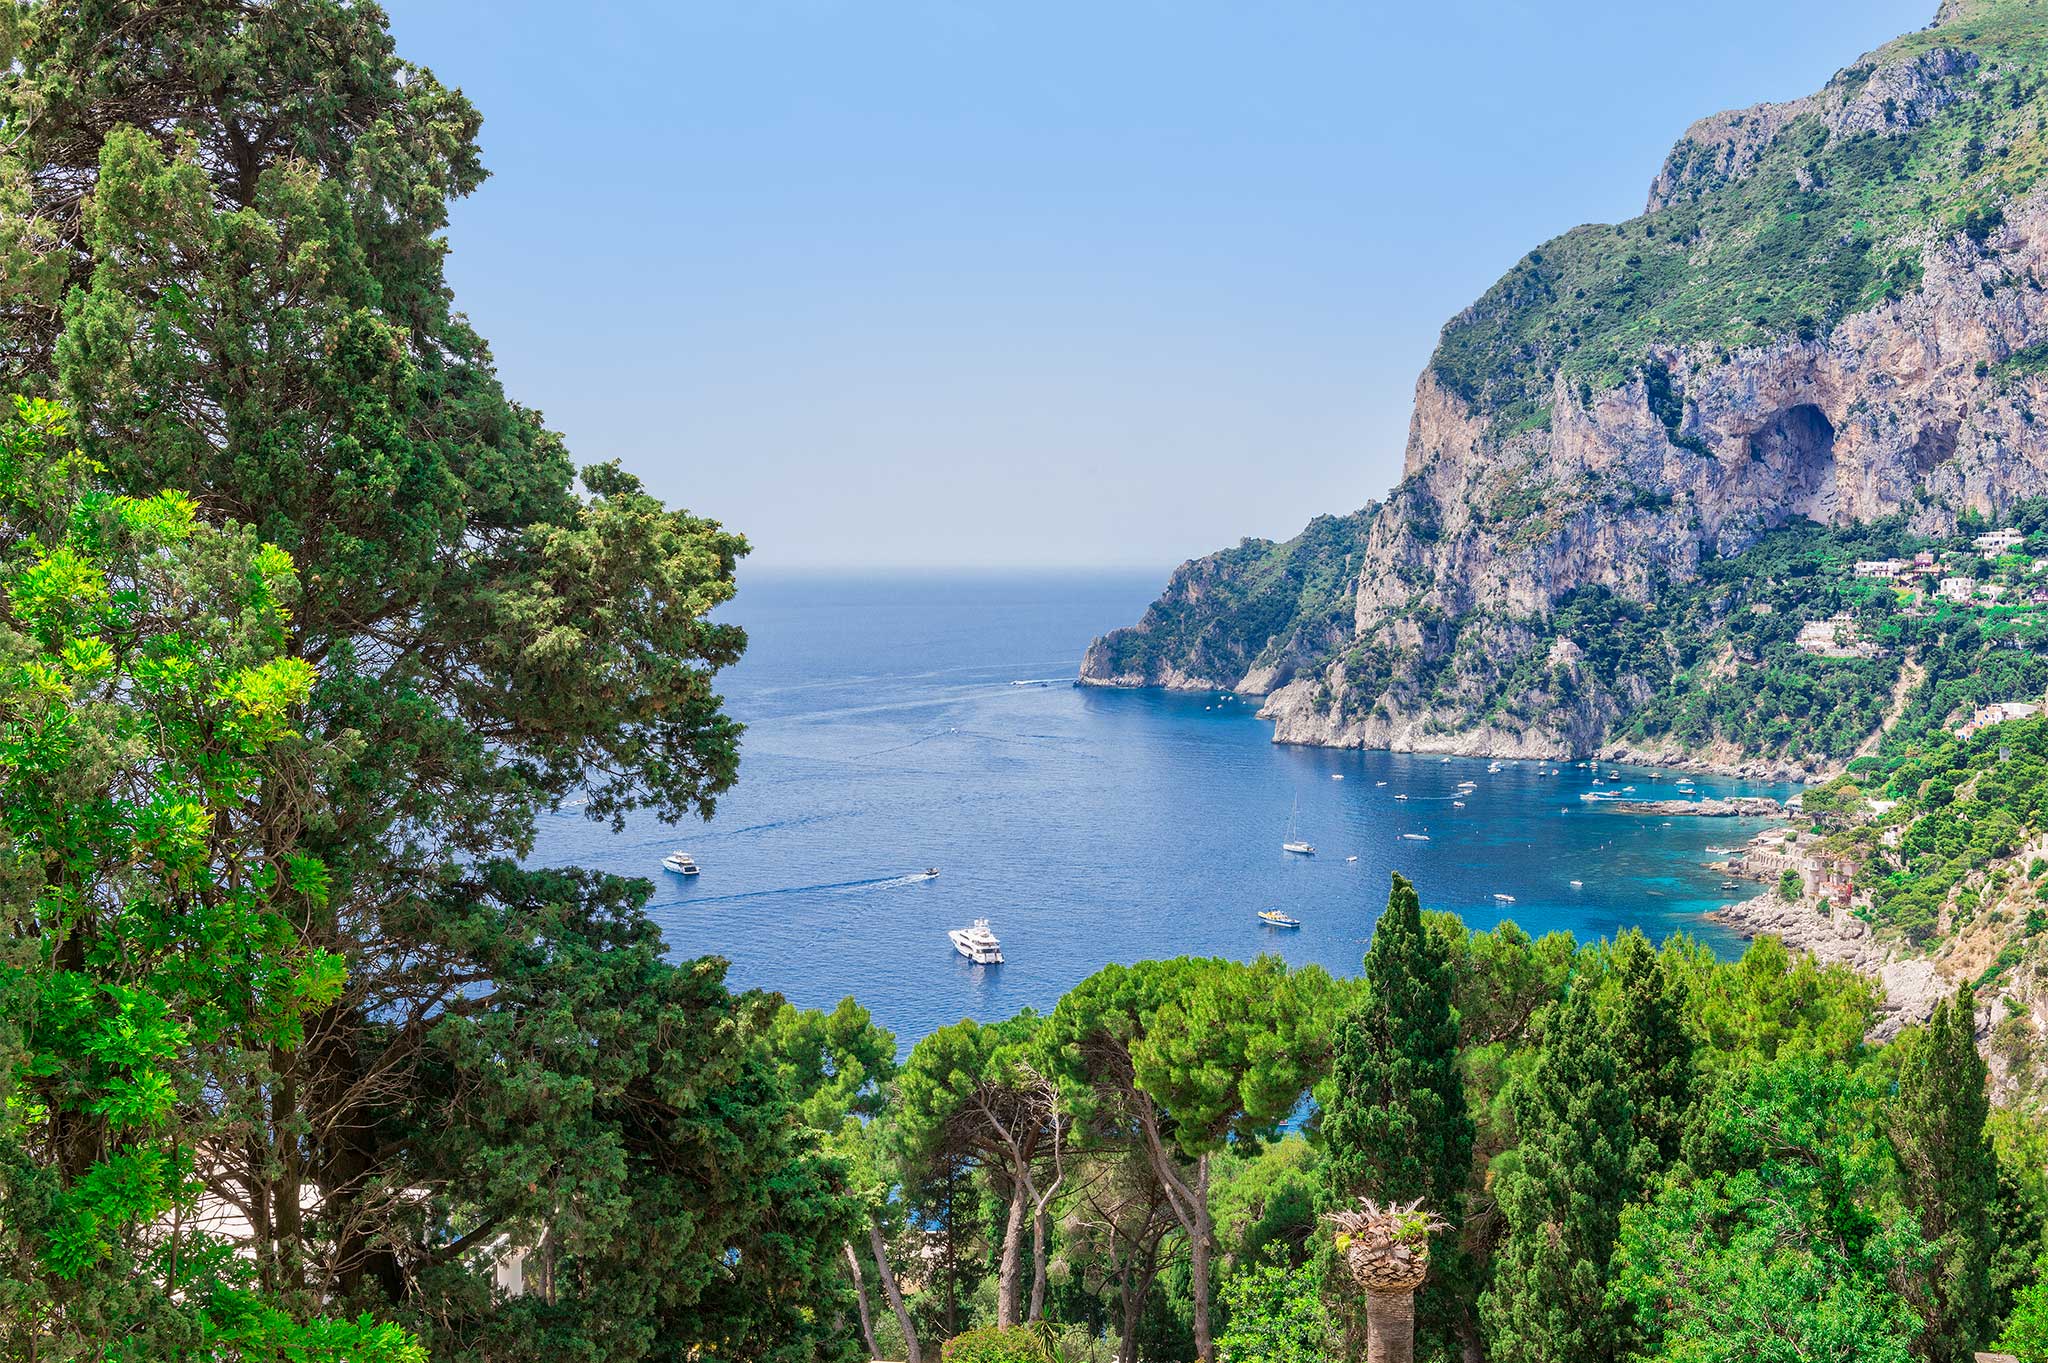 Ville di lusso e Case in vendita Capri | Sotheby’s Realty - sothebys.photo 1